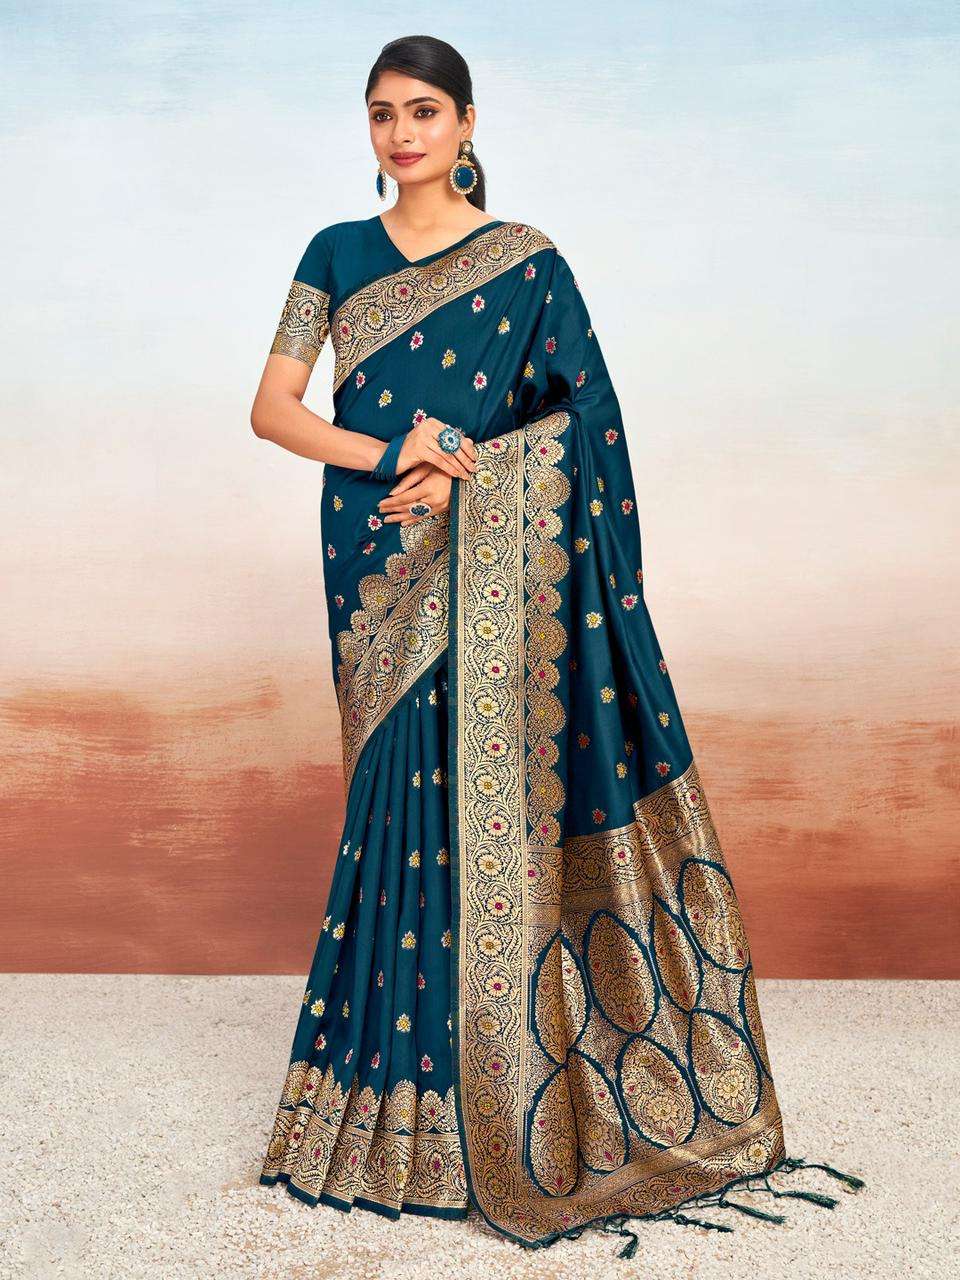 sangam prints bunawat vanshika silk regal look saree catalog